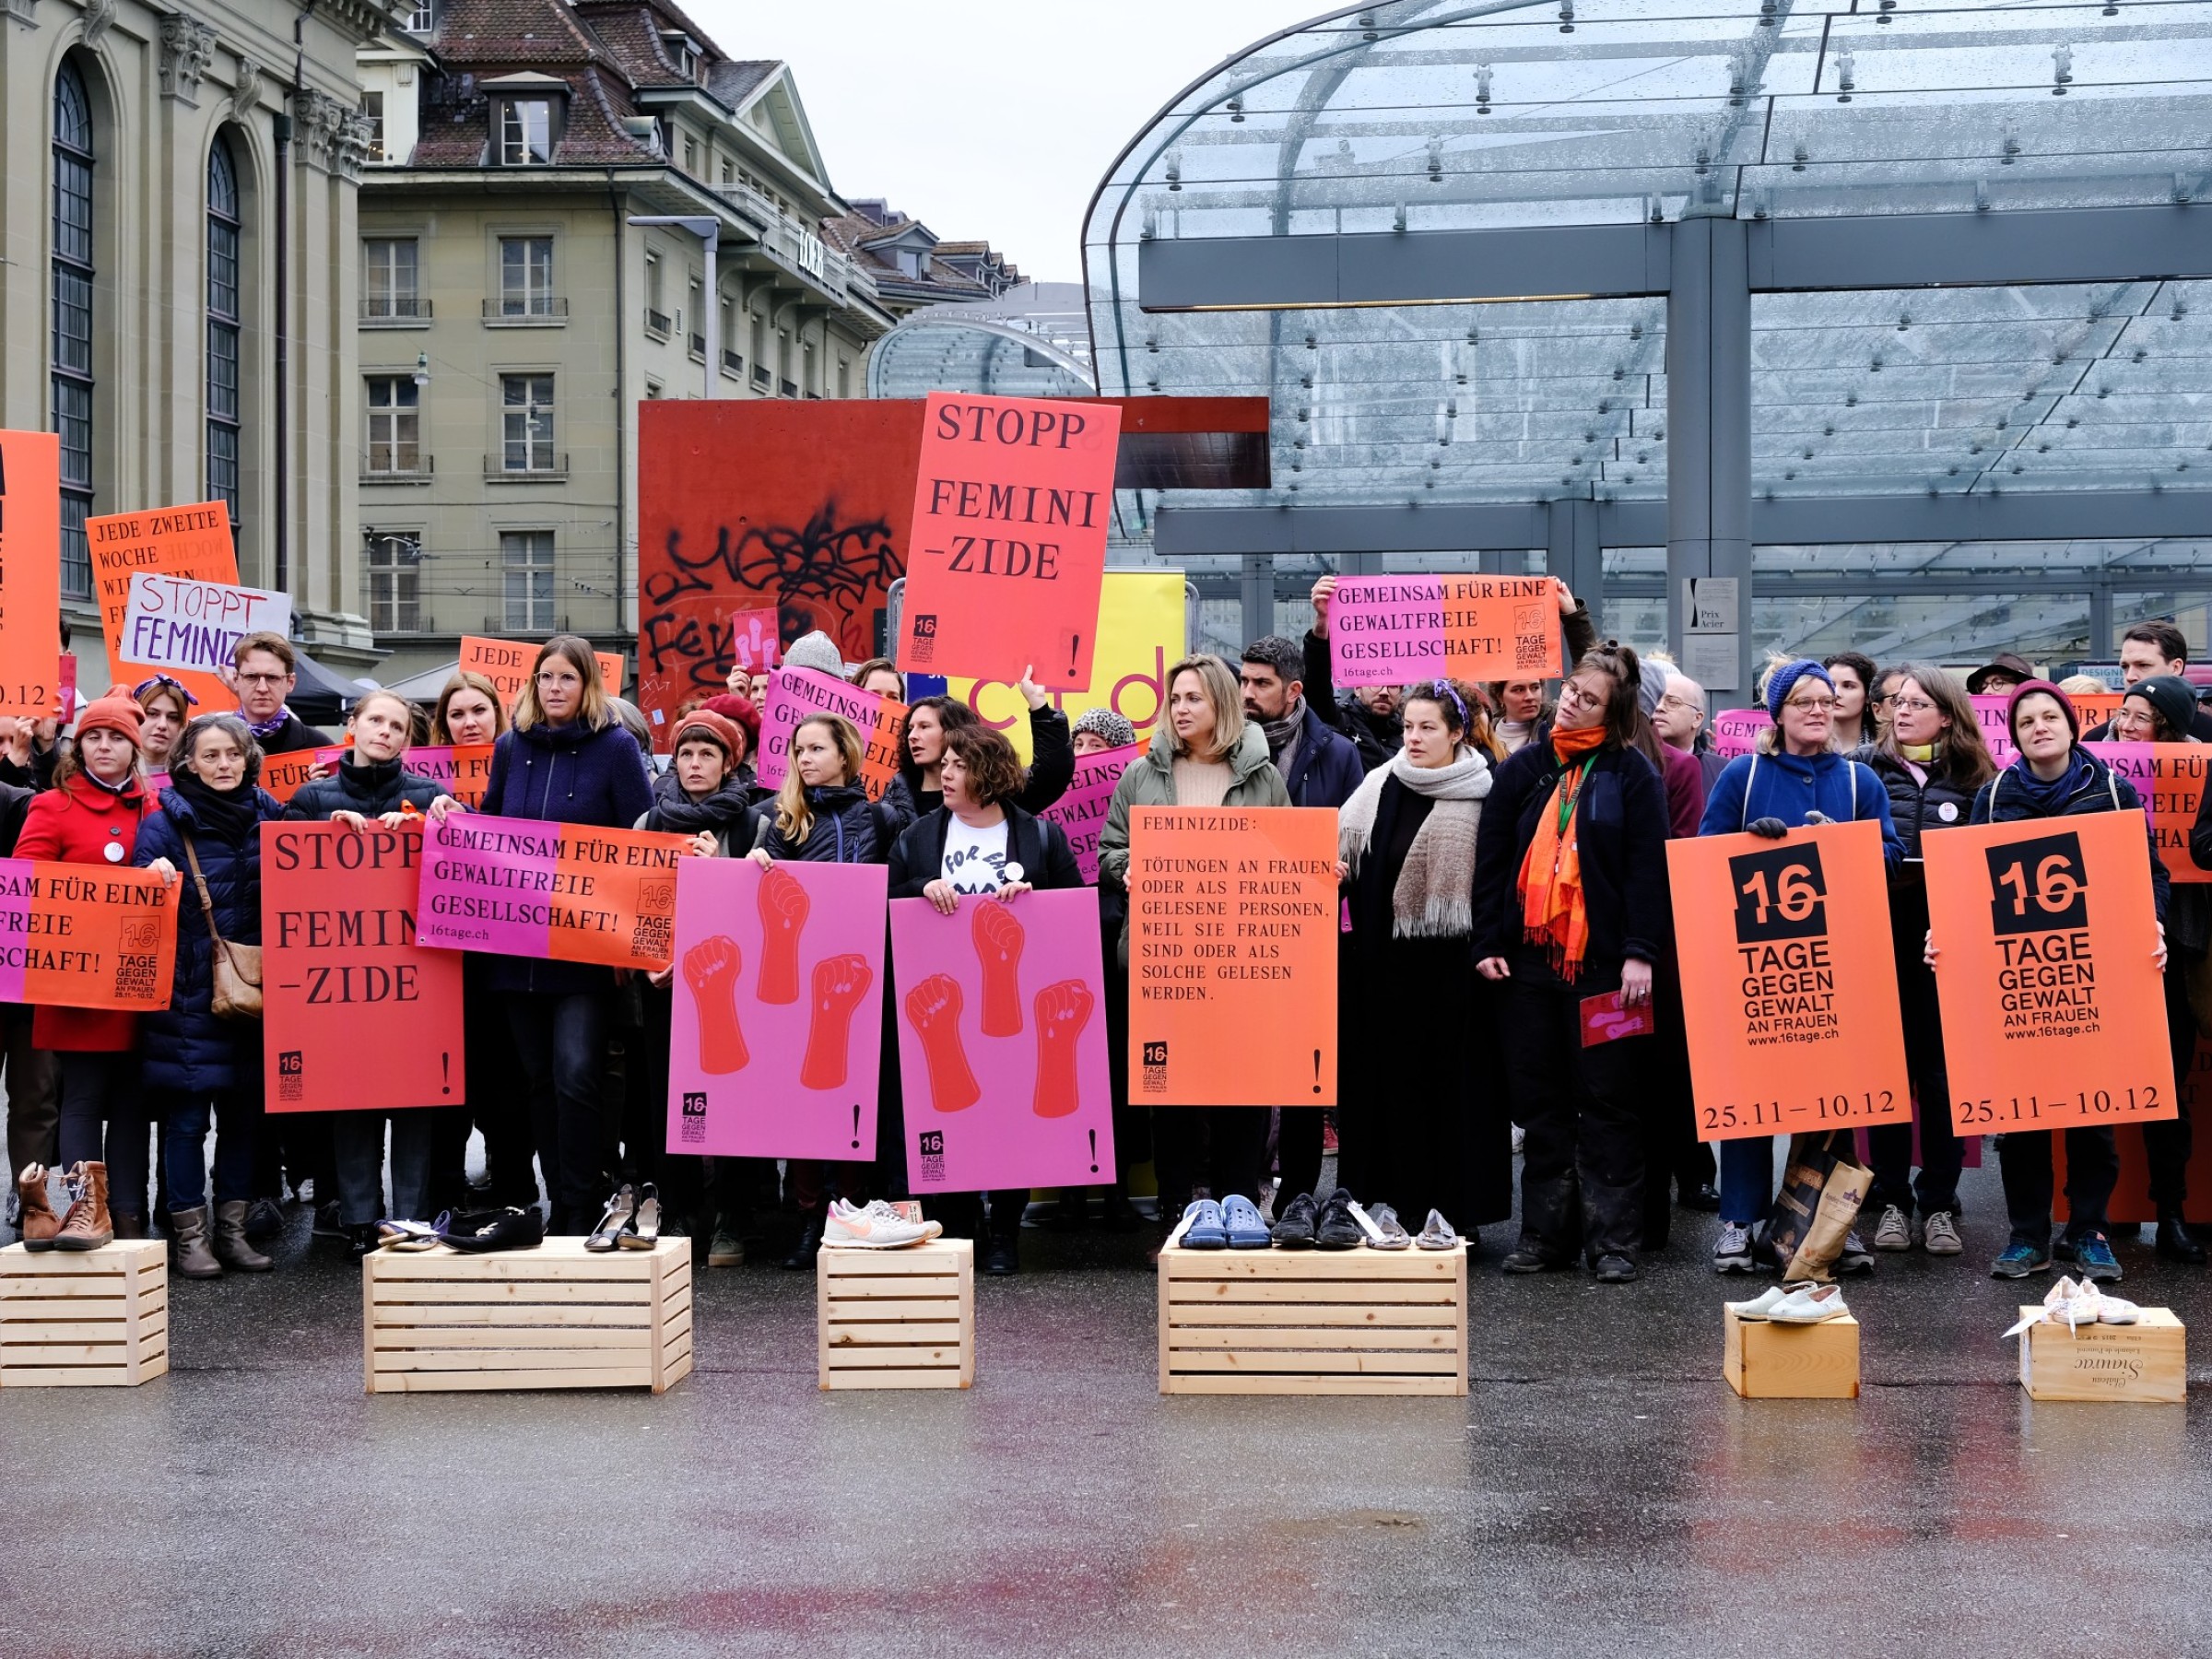 Kampagne 16 Tage gegen Gewalt an Frauen in Bern beim Baldachin